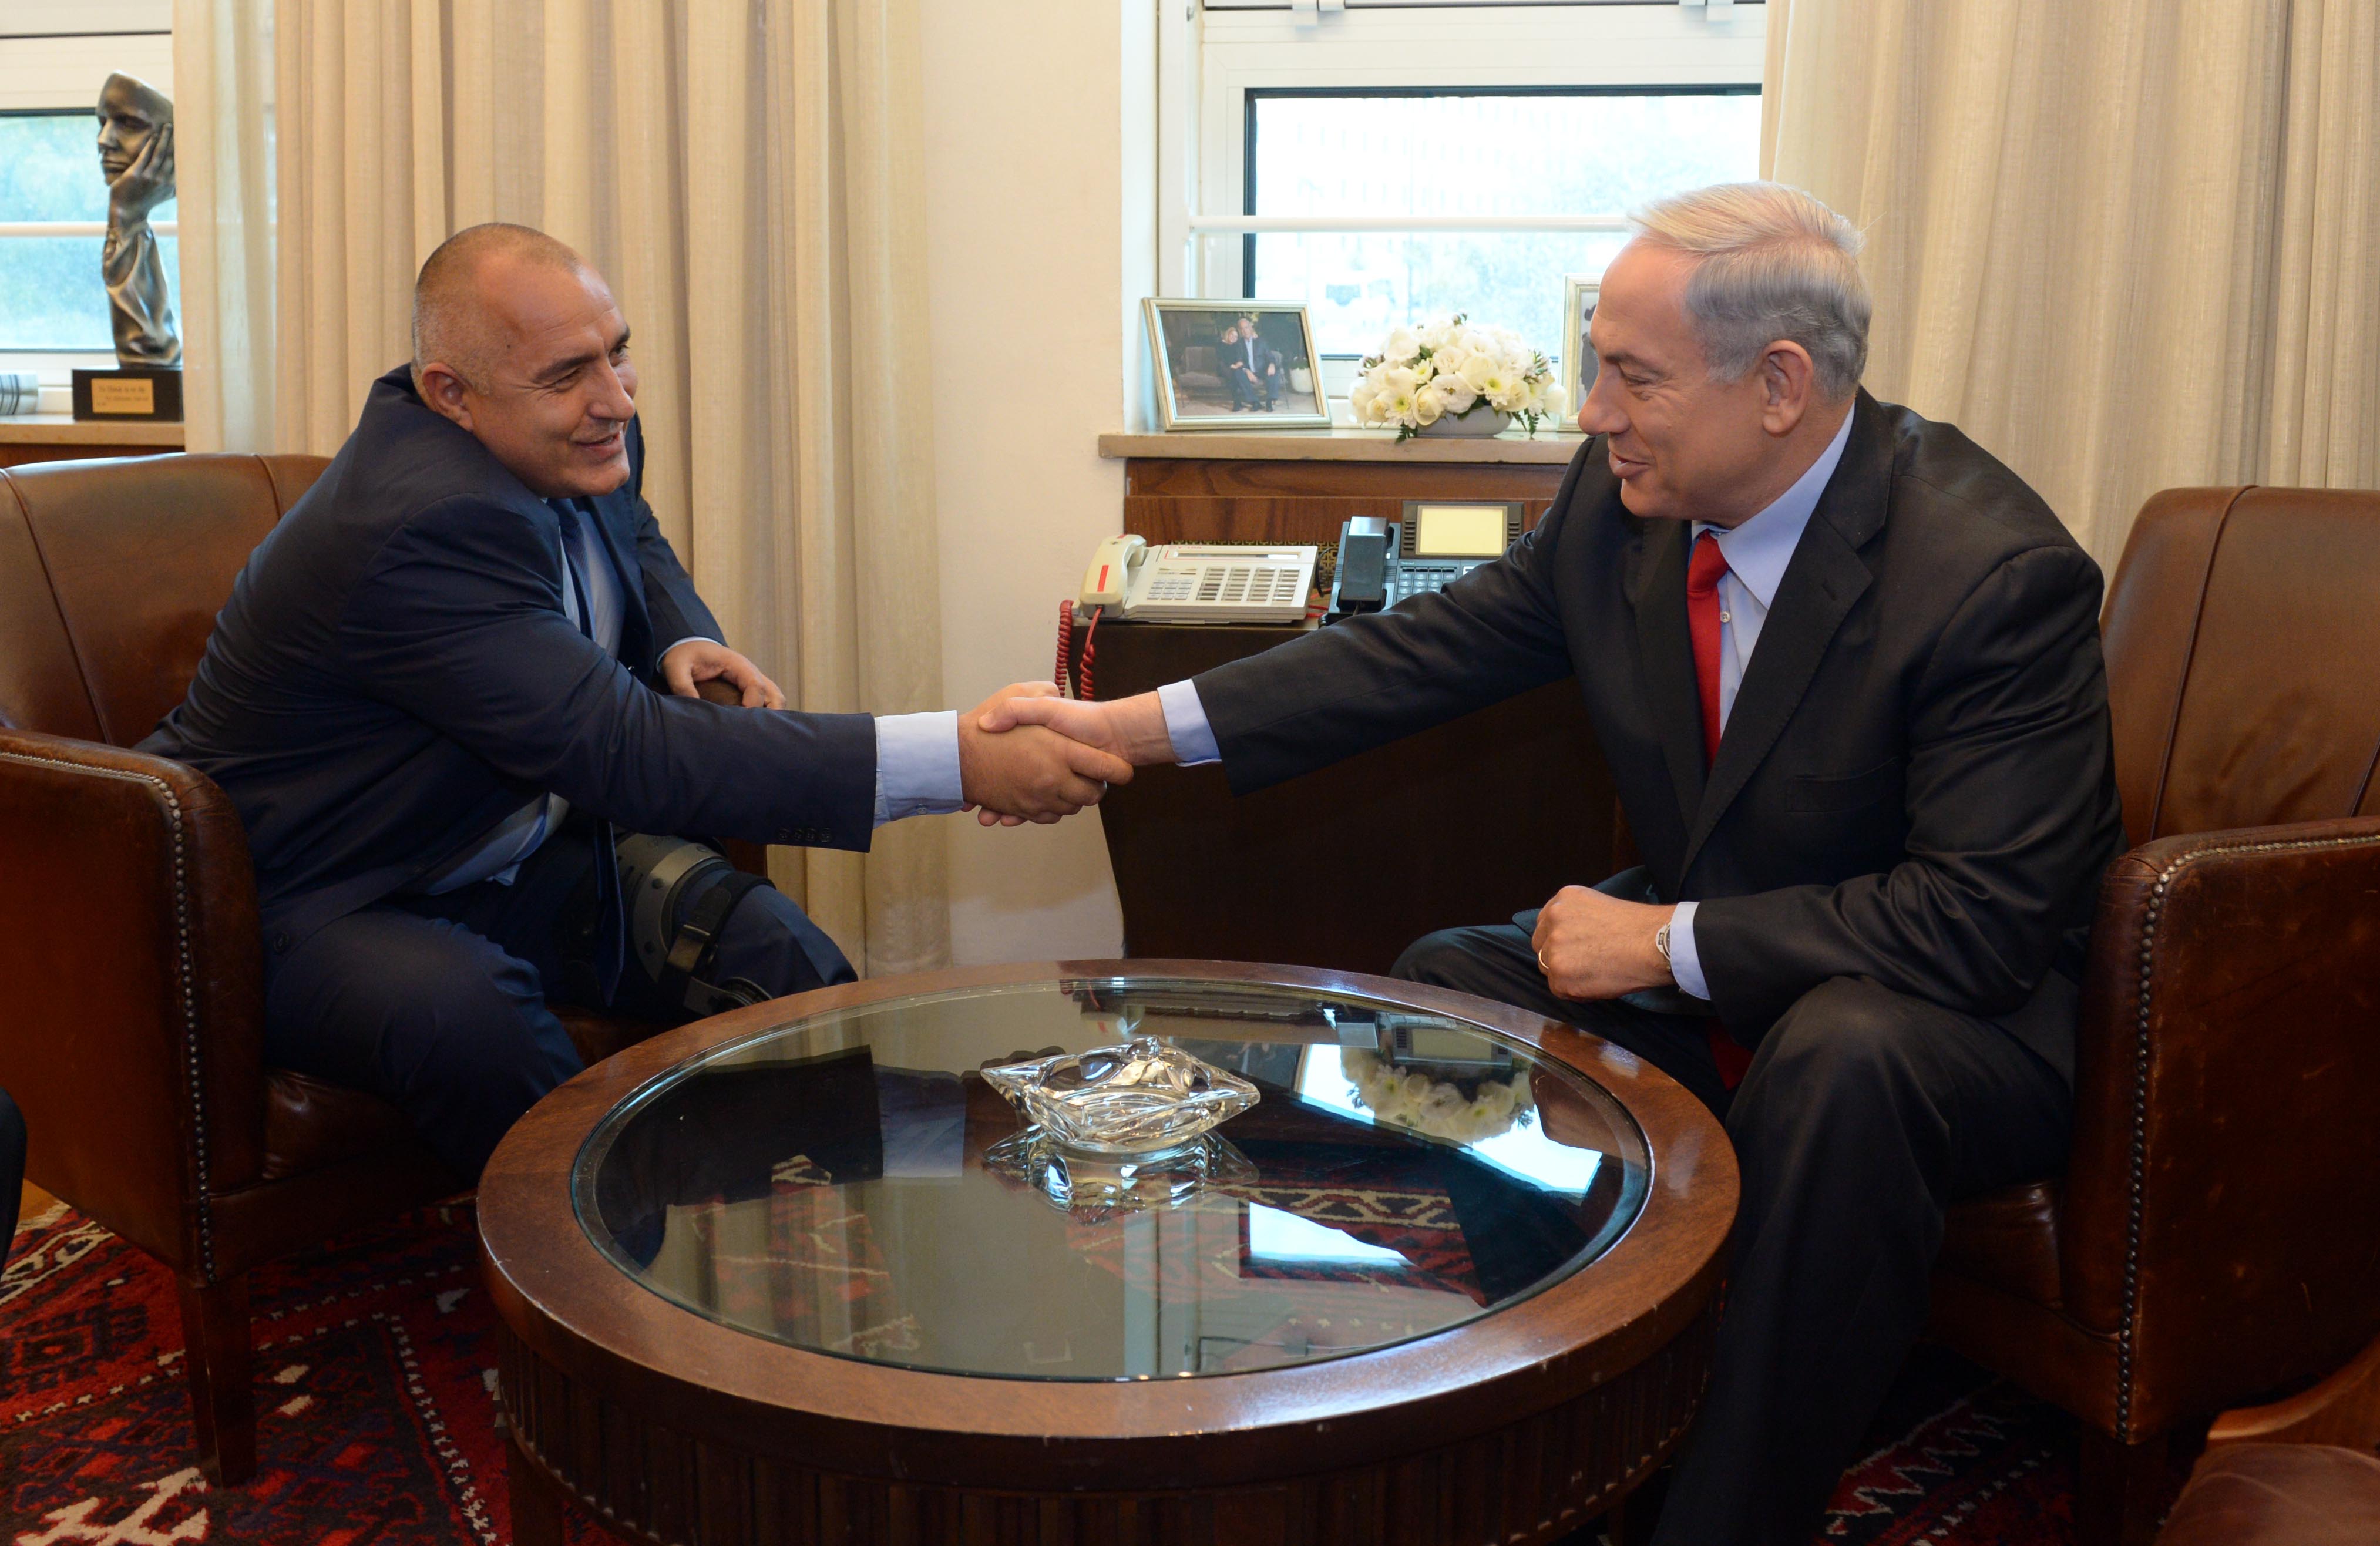 Борисов с патерици в Израел, срещна се с ”приятеля си Биби Нетаняху”